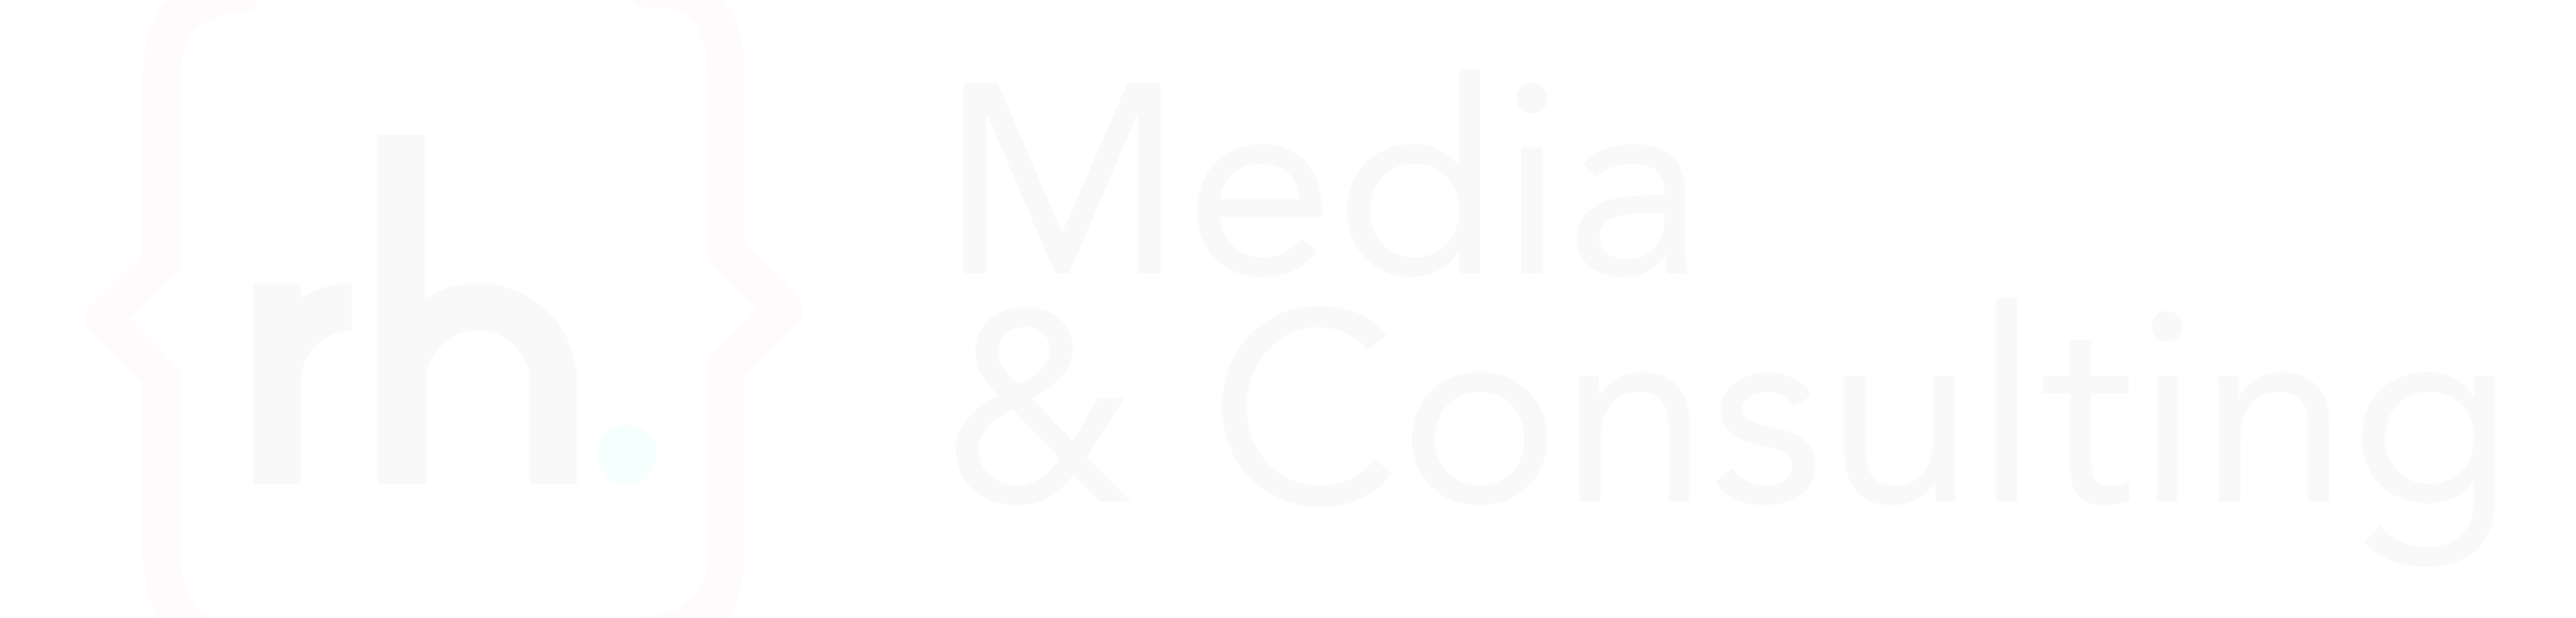 RH Media & Consulting